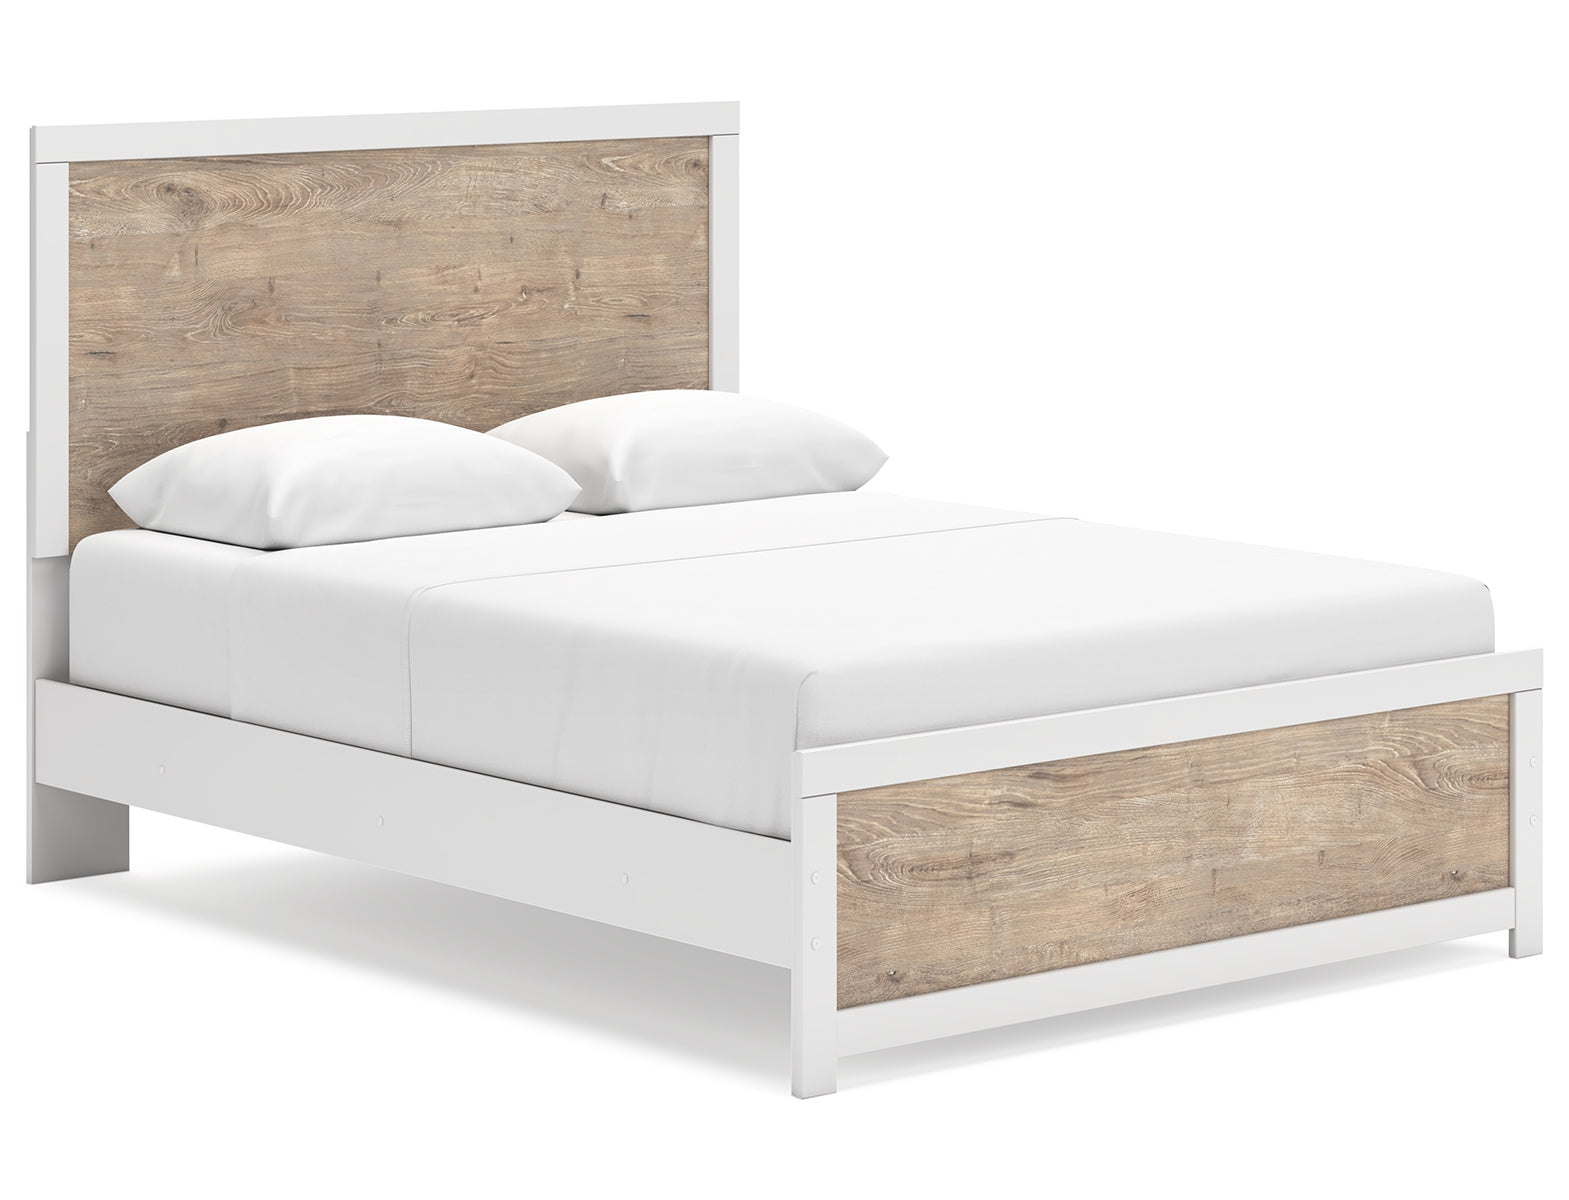 Charbitt Queen Panel Bed with 2 Nightstands